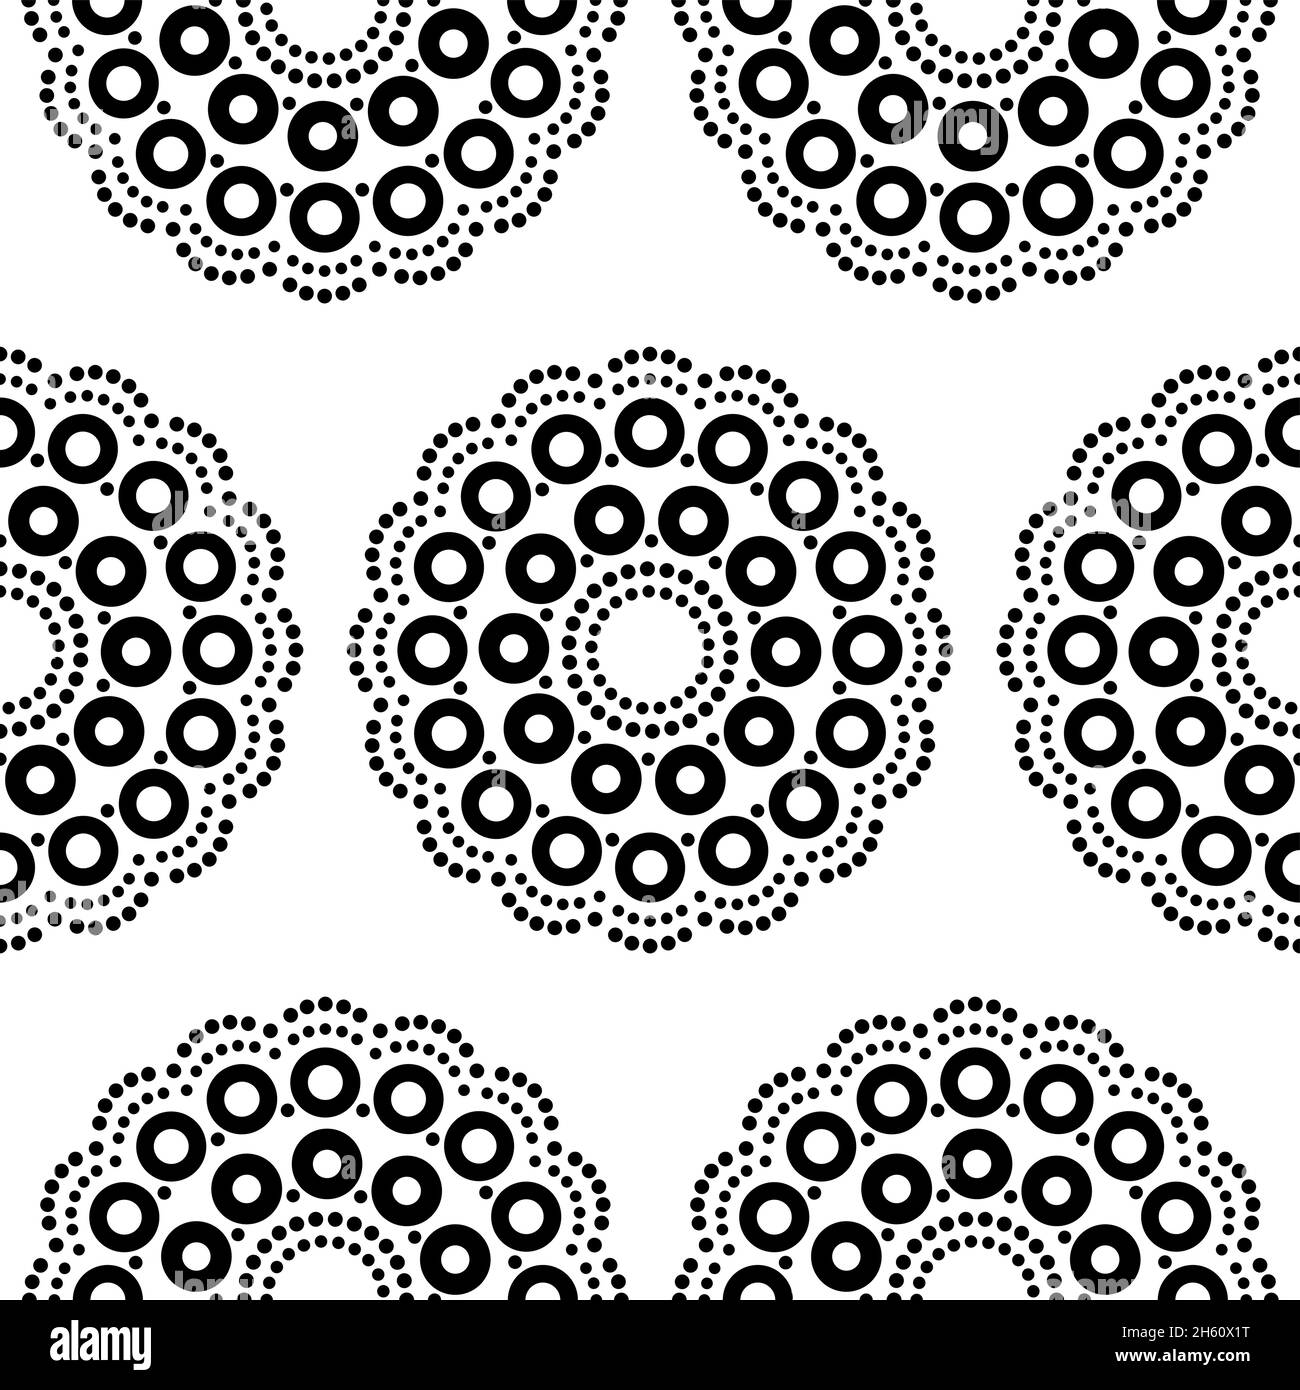 Aboriginal dot painting mandala sans couture vector pattern, répétitive dot ar en noir sur fond blanc inspiré par des dessins de l'Australie Illustration de Vecteur